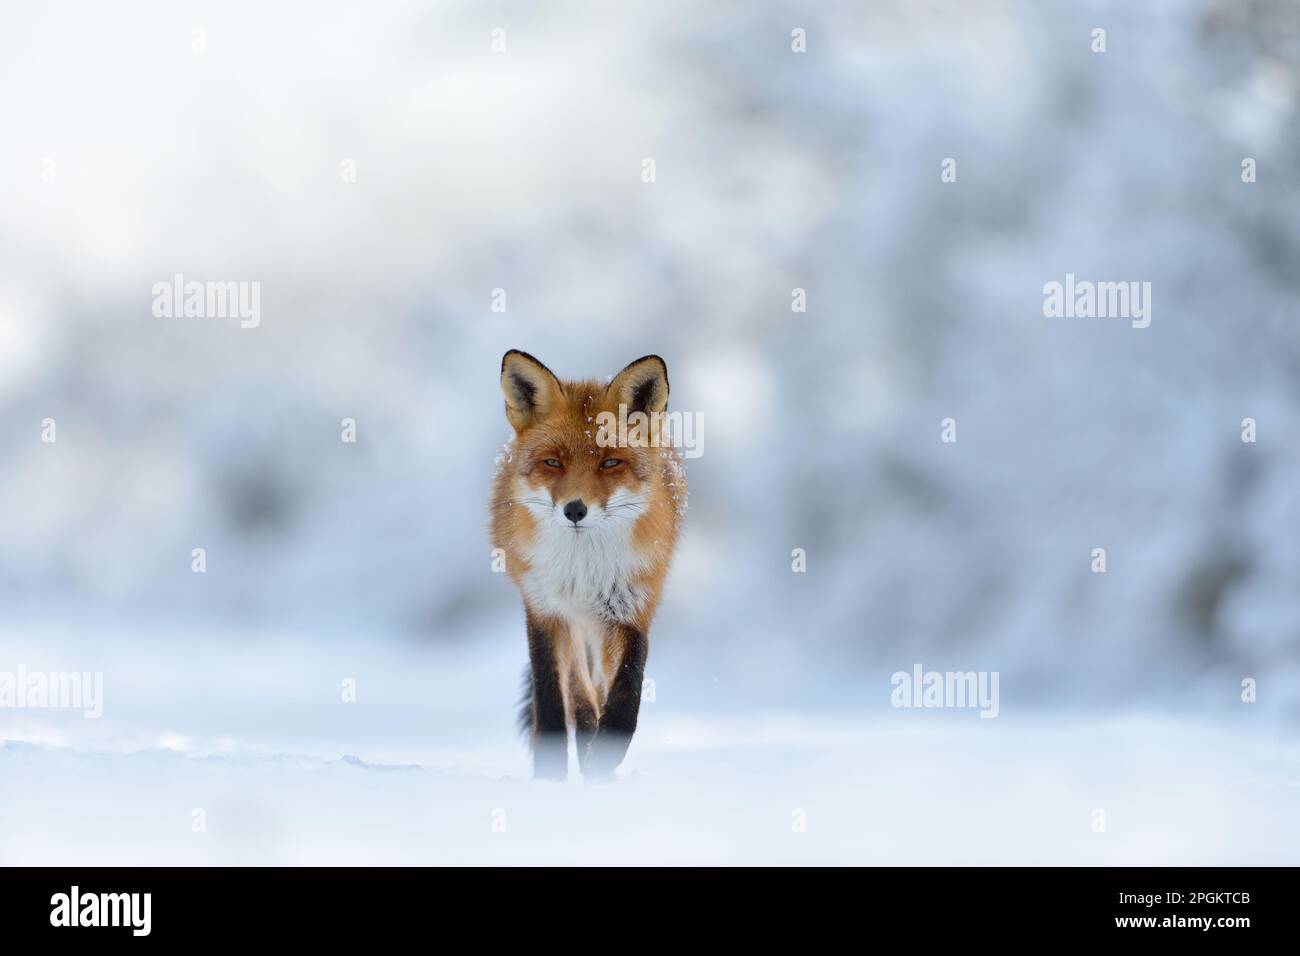 Contatto con gli occhi... La volpe rossa ( Vulpes vulpes ) attraversa un paesaggio innevato lungo il bordo della foresta direttamente verso la telecamera, ripresa frontale. Foto Stock